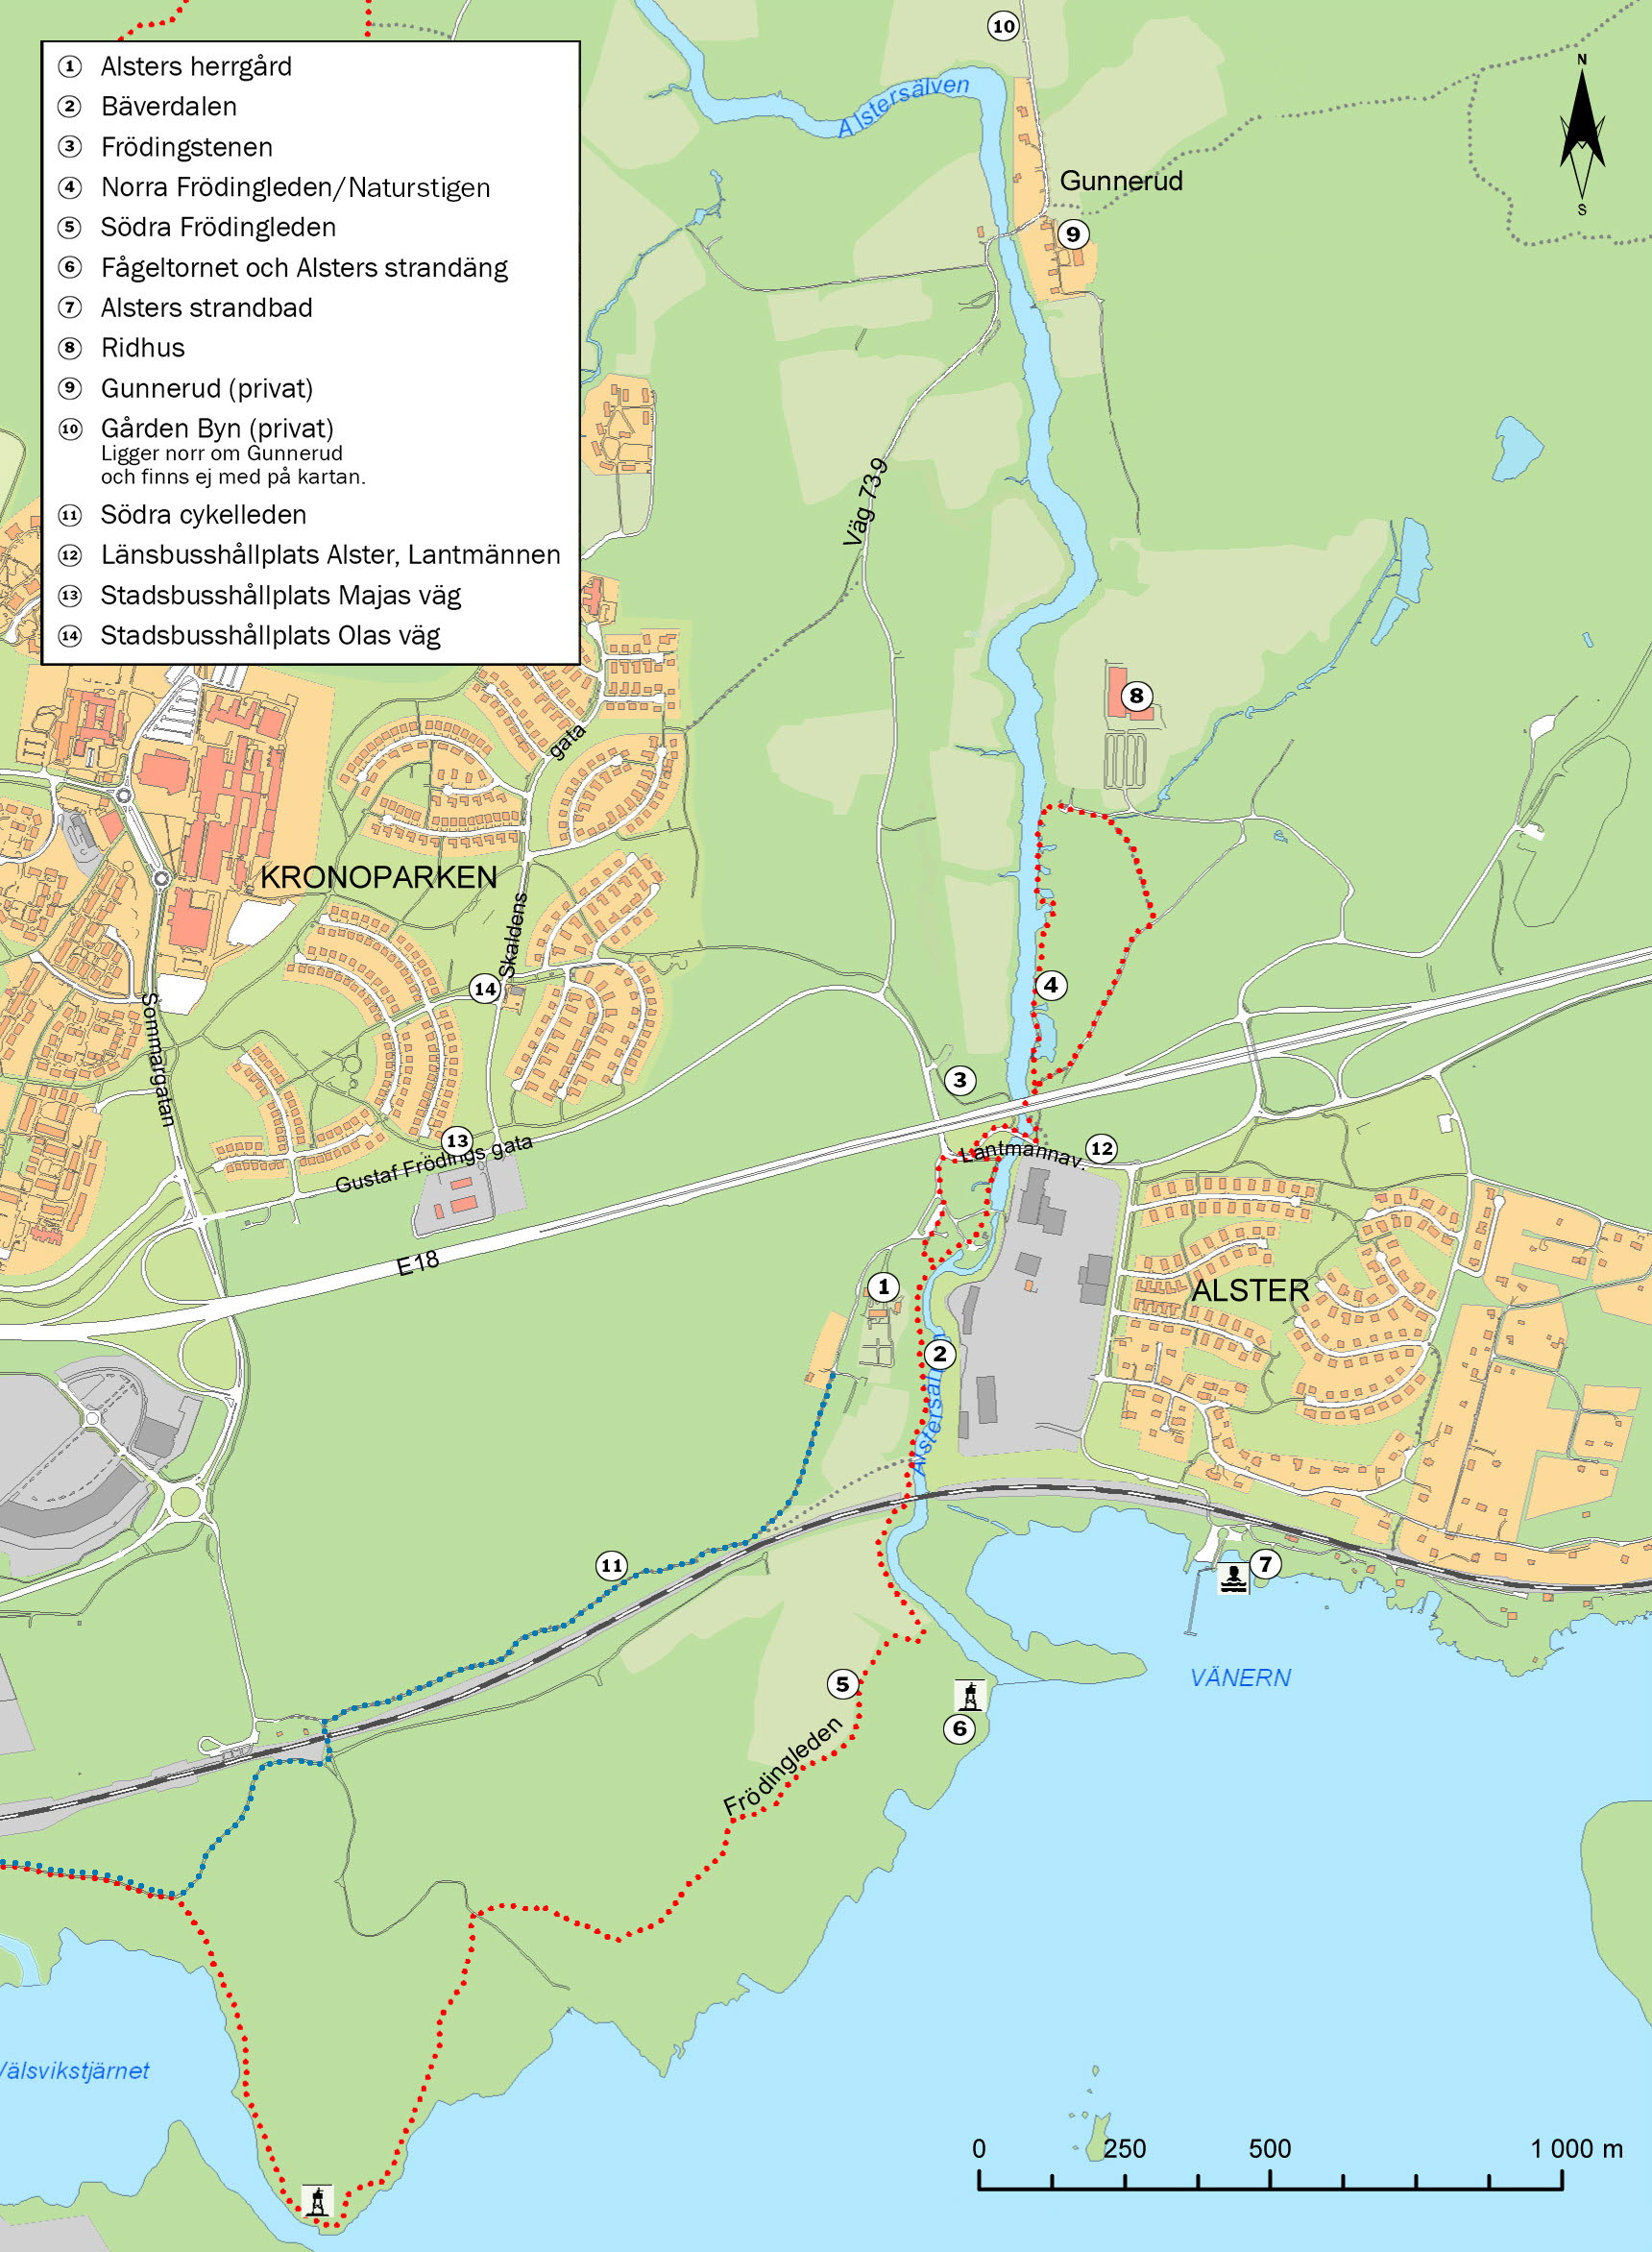 Karta Alsters herrgård och närområdet